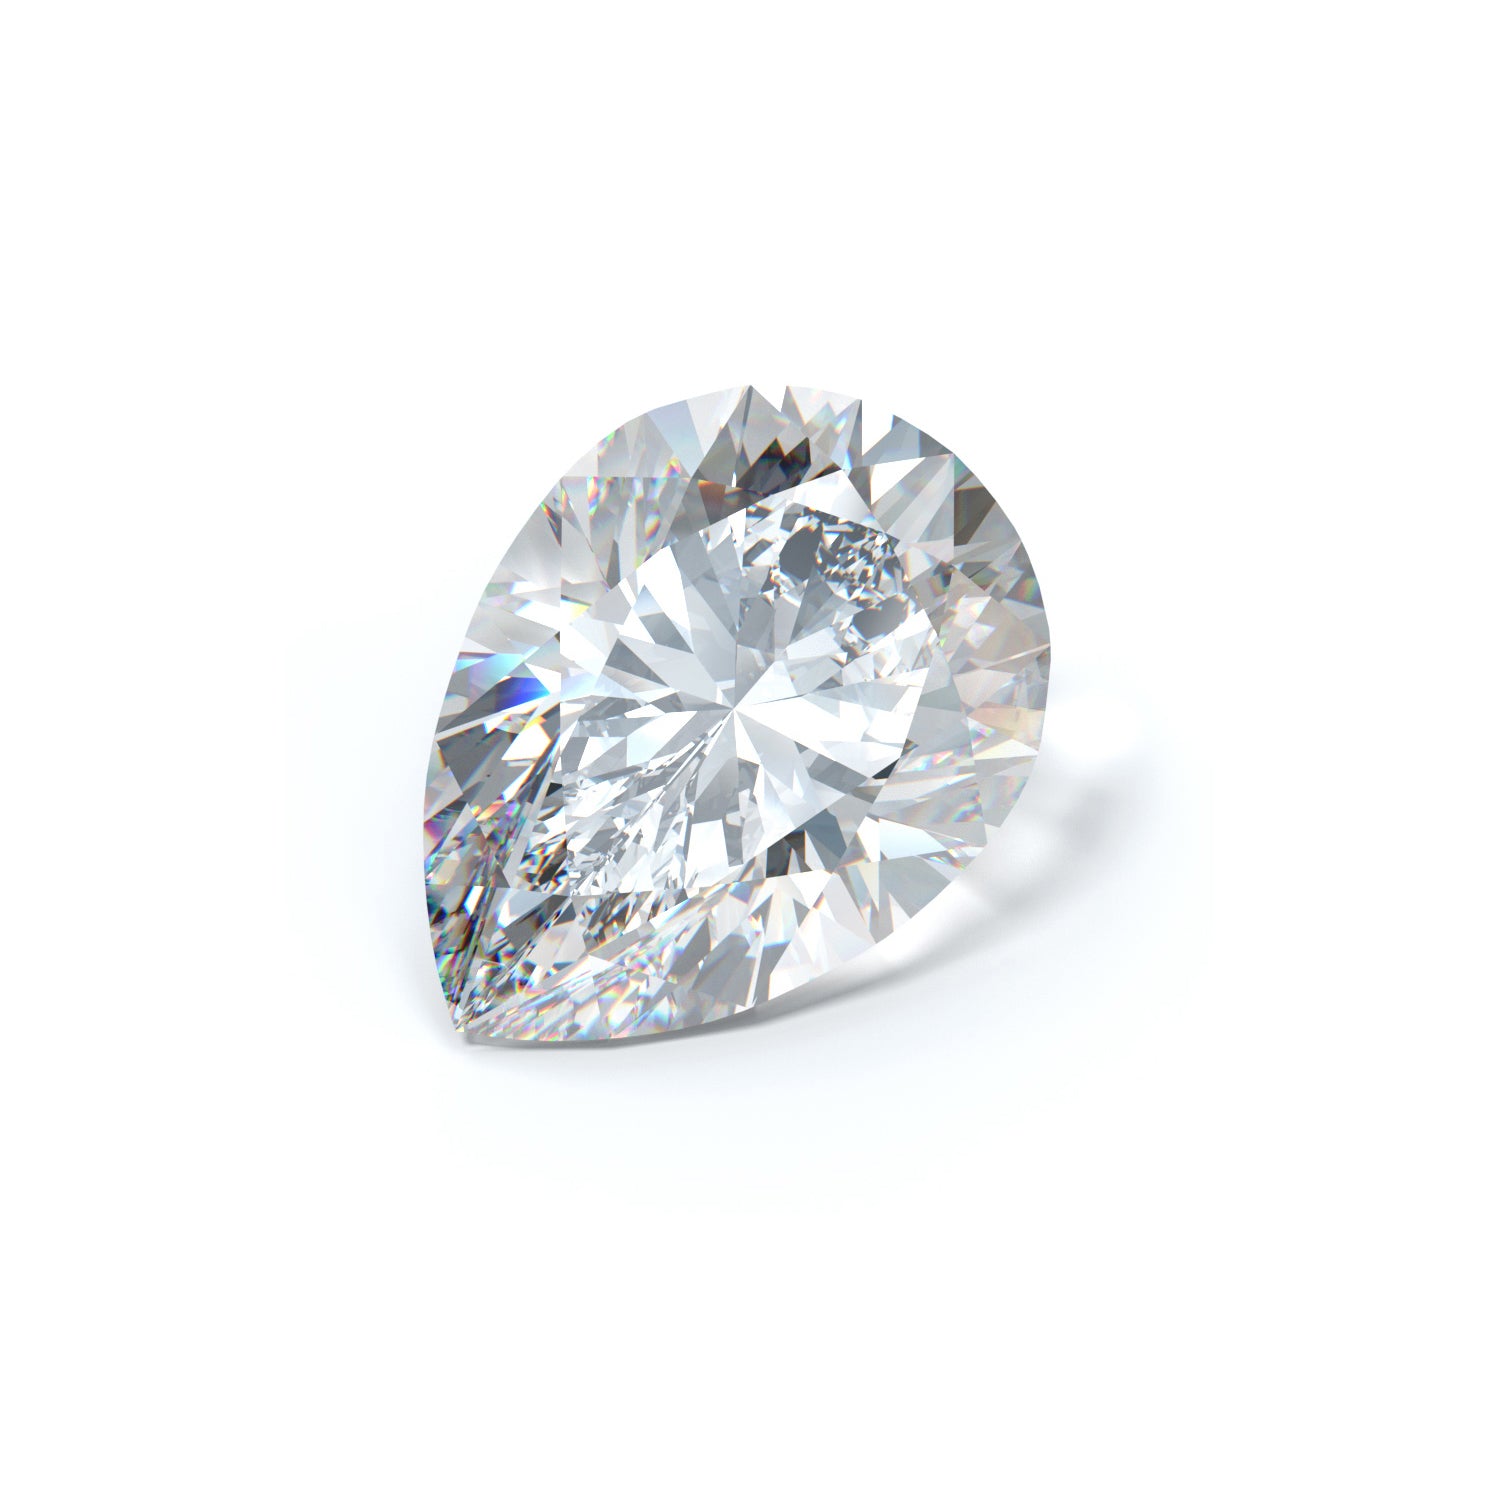 1.73 Pear Shape Diamond (CLARITY ENHANCED)